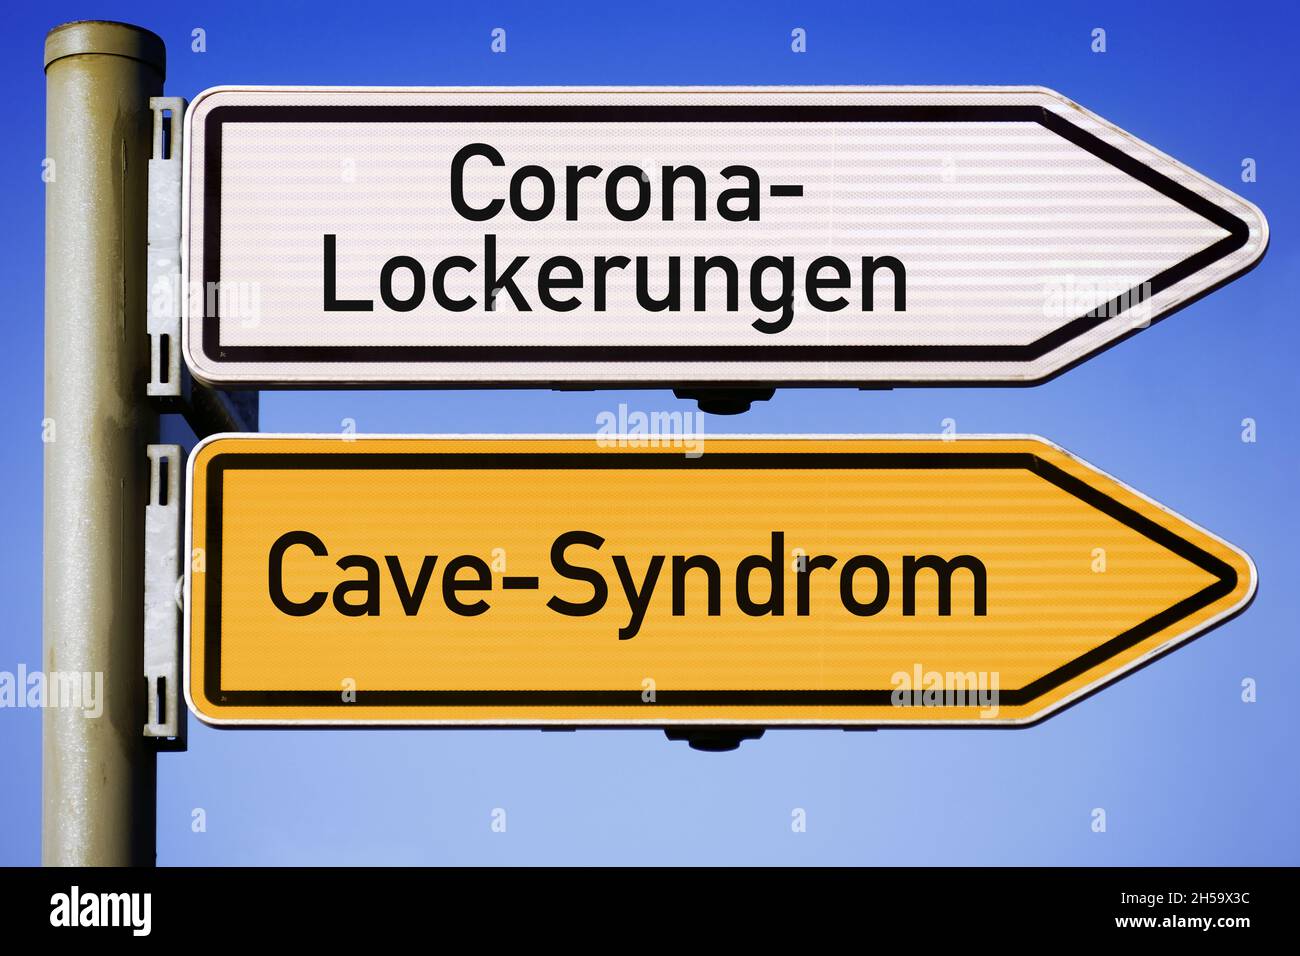 FOTOMONTAGE, Wegweiser Corona-Lockerungen und Cave-Syndrom Foto de stock